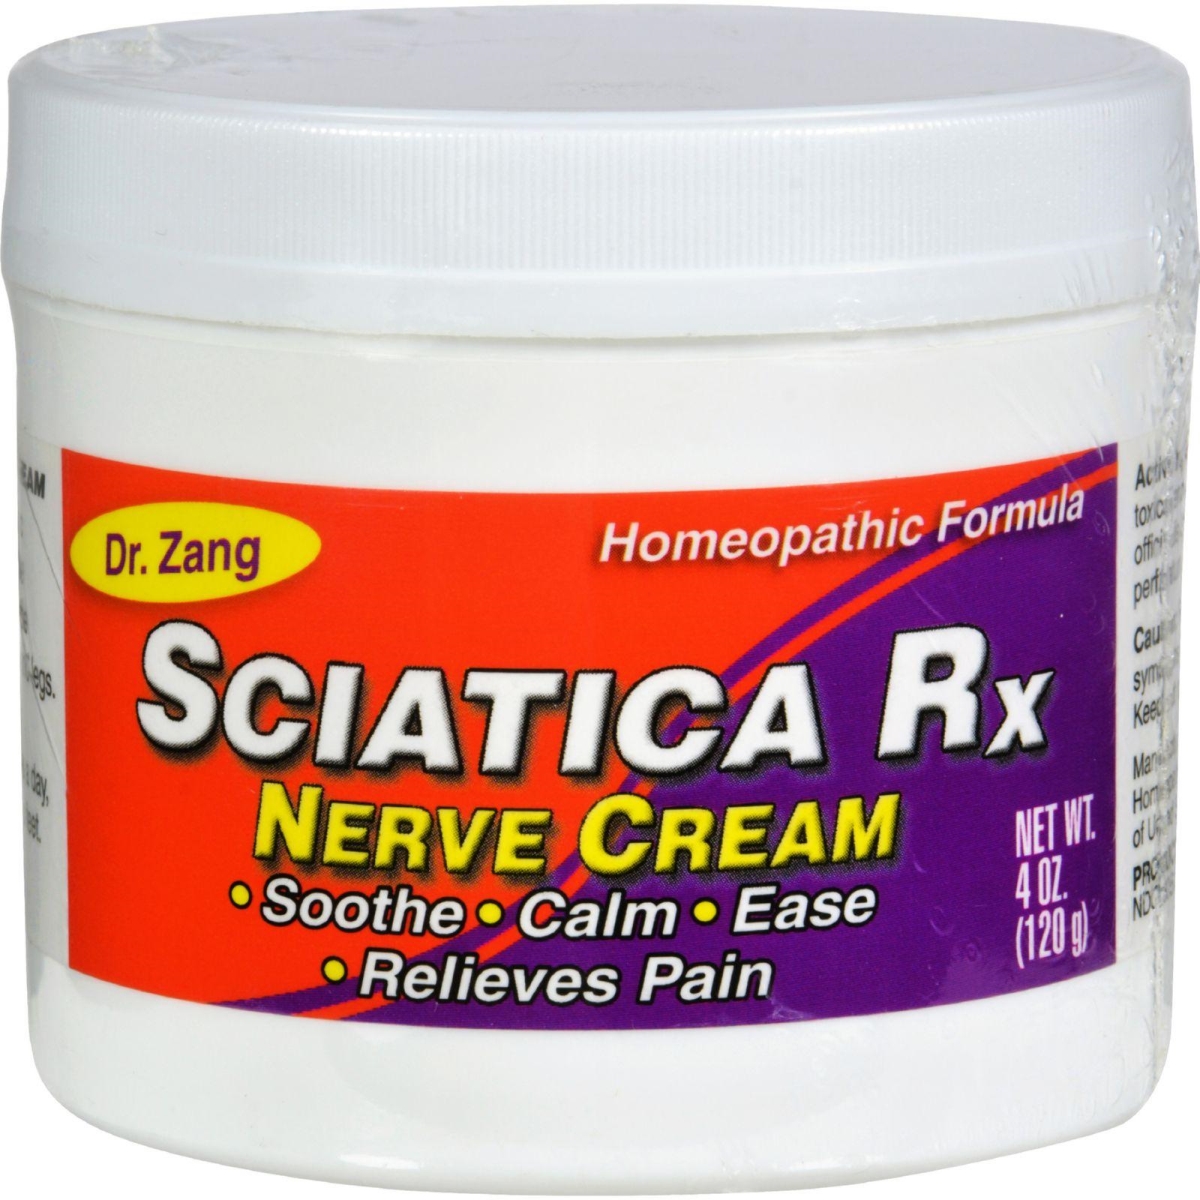 Hg0334581 4 Oz Sciatica Rx Nerve Cream Homeopathic Formula